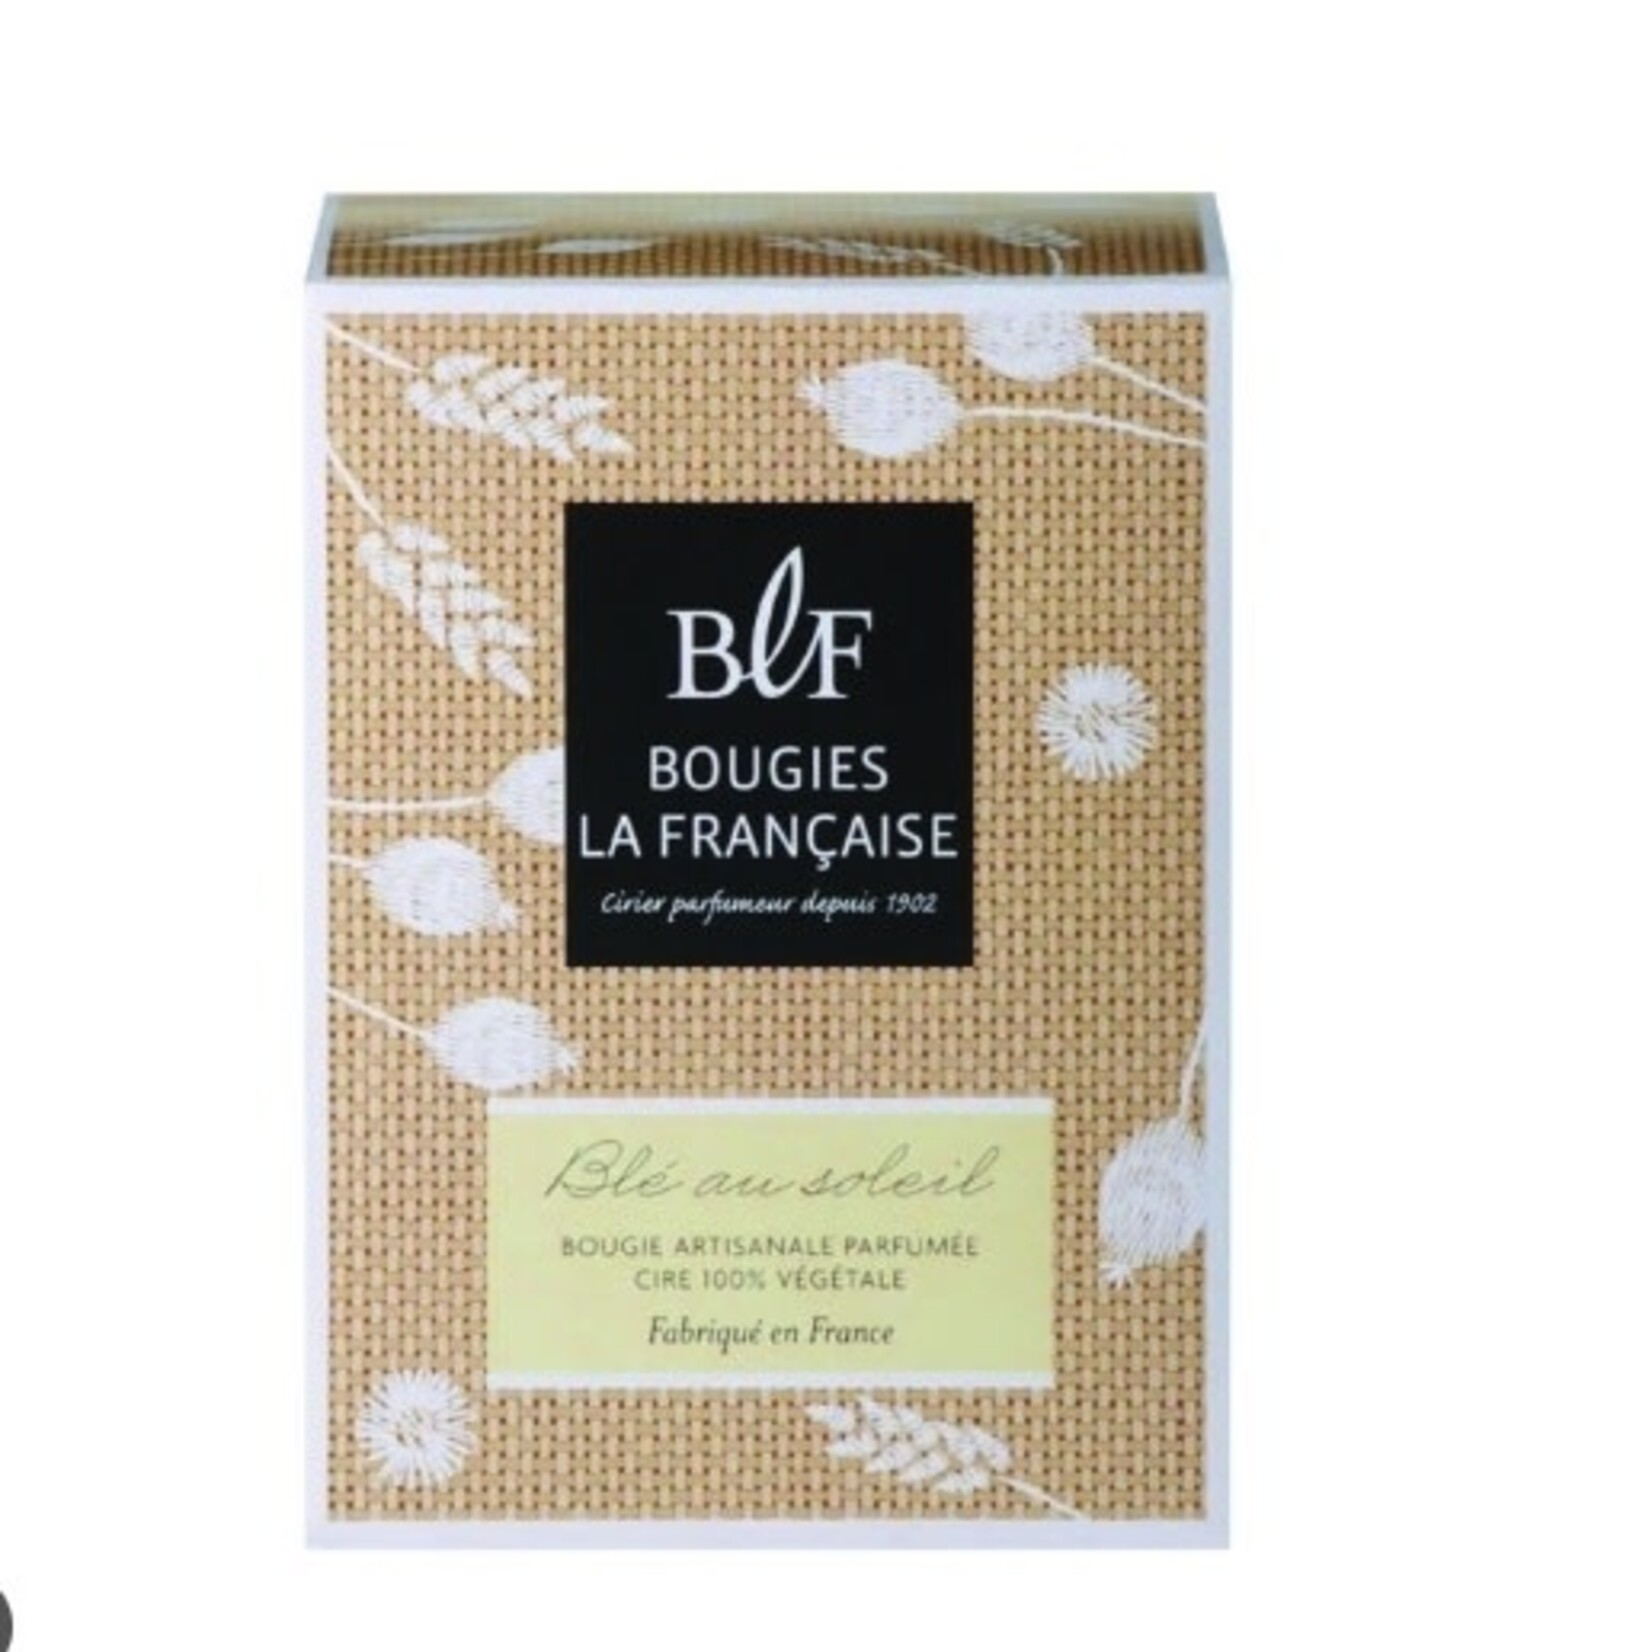 Bougie La Francaise BLF BOXED CANDLES BLE AU SOLEIL